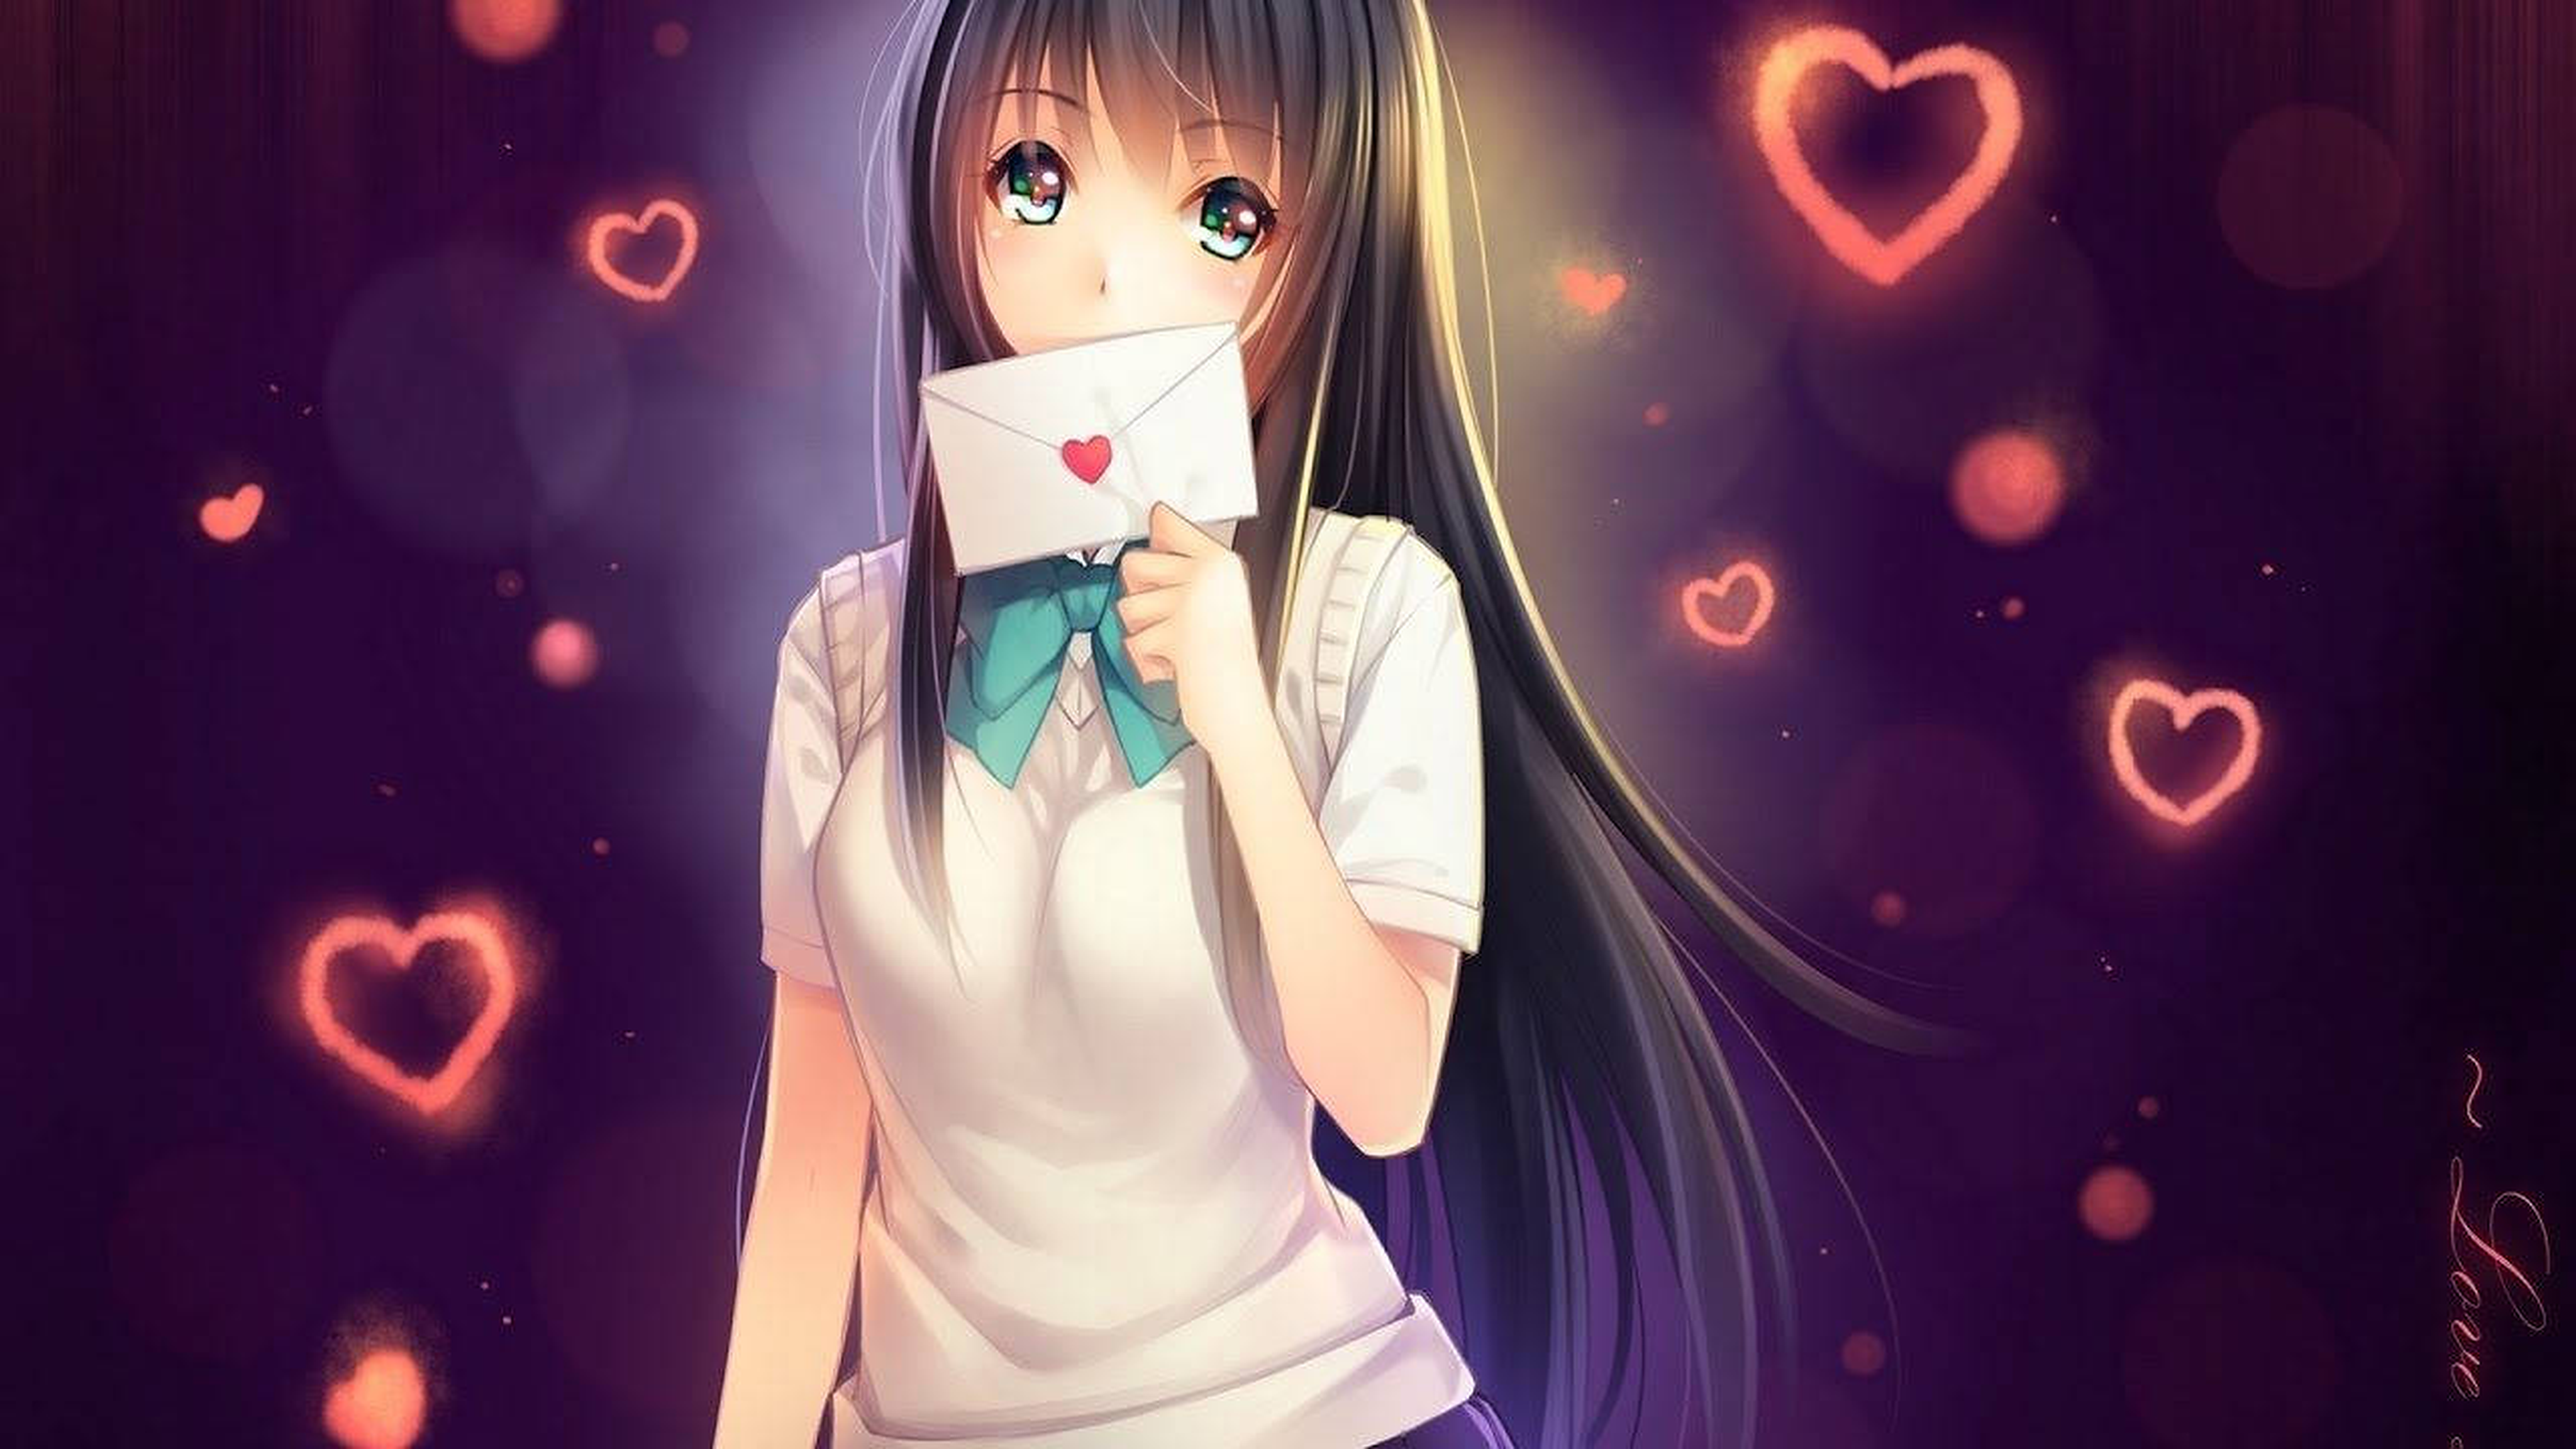 Anime Anime Girls Artwork Digital Art Schoolgirl School Uniform Letter Hearts Brunette Long Hair Blu 4096x2304